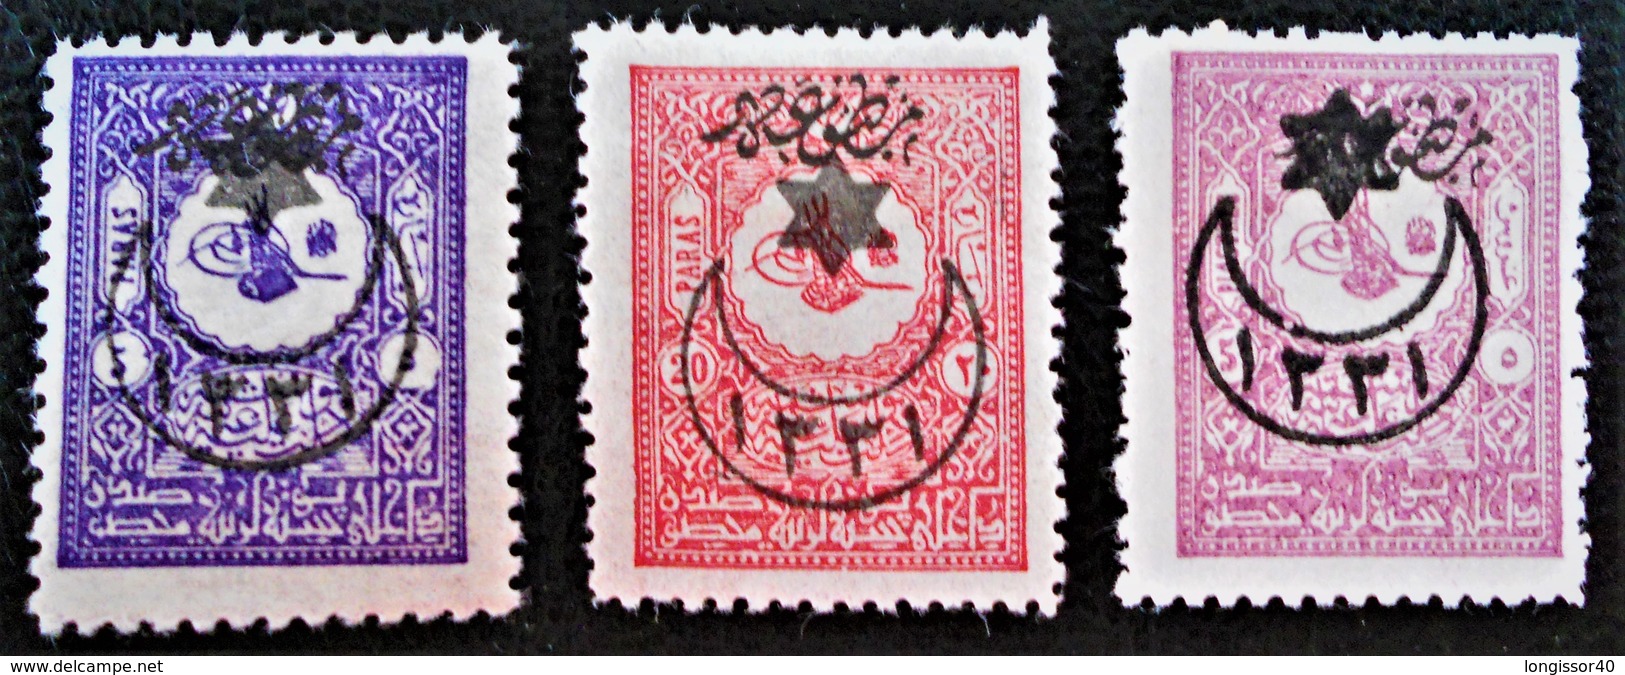 SURCHARGES 6 ETOILES ET 1 CROISSANT 1915 - TIMBRES POUR JOURNAUX - NEUFS * - YT 228/30 - Unused Stamps